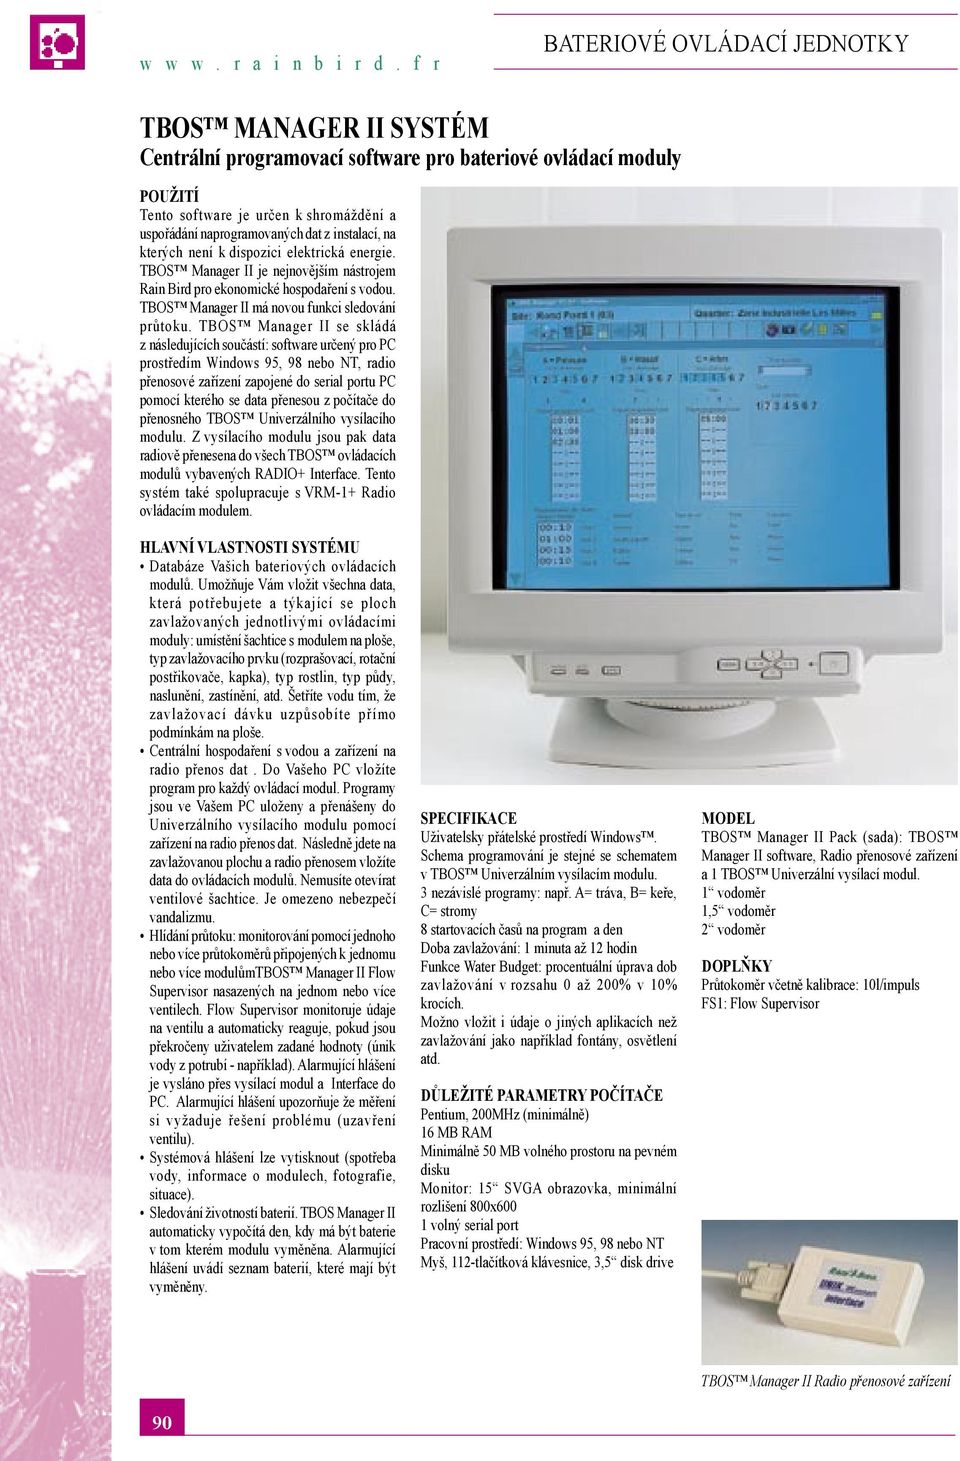 TBOS Manager II se skládá z následujících součástí: software určený pro PC prostředím Windows 95, 98 nebo NT, radio přenosové zařízení zapojené do serial portu PC pomocí kterého se data přenesou z